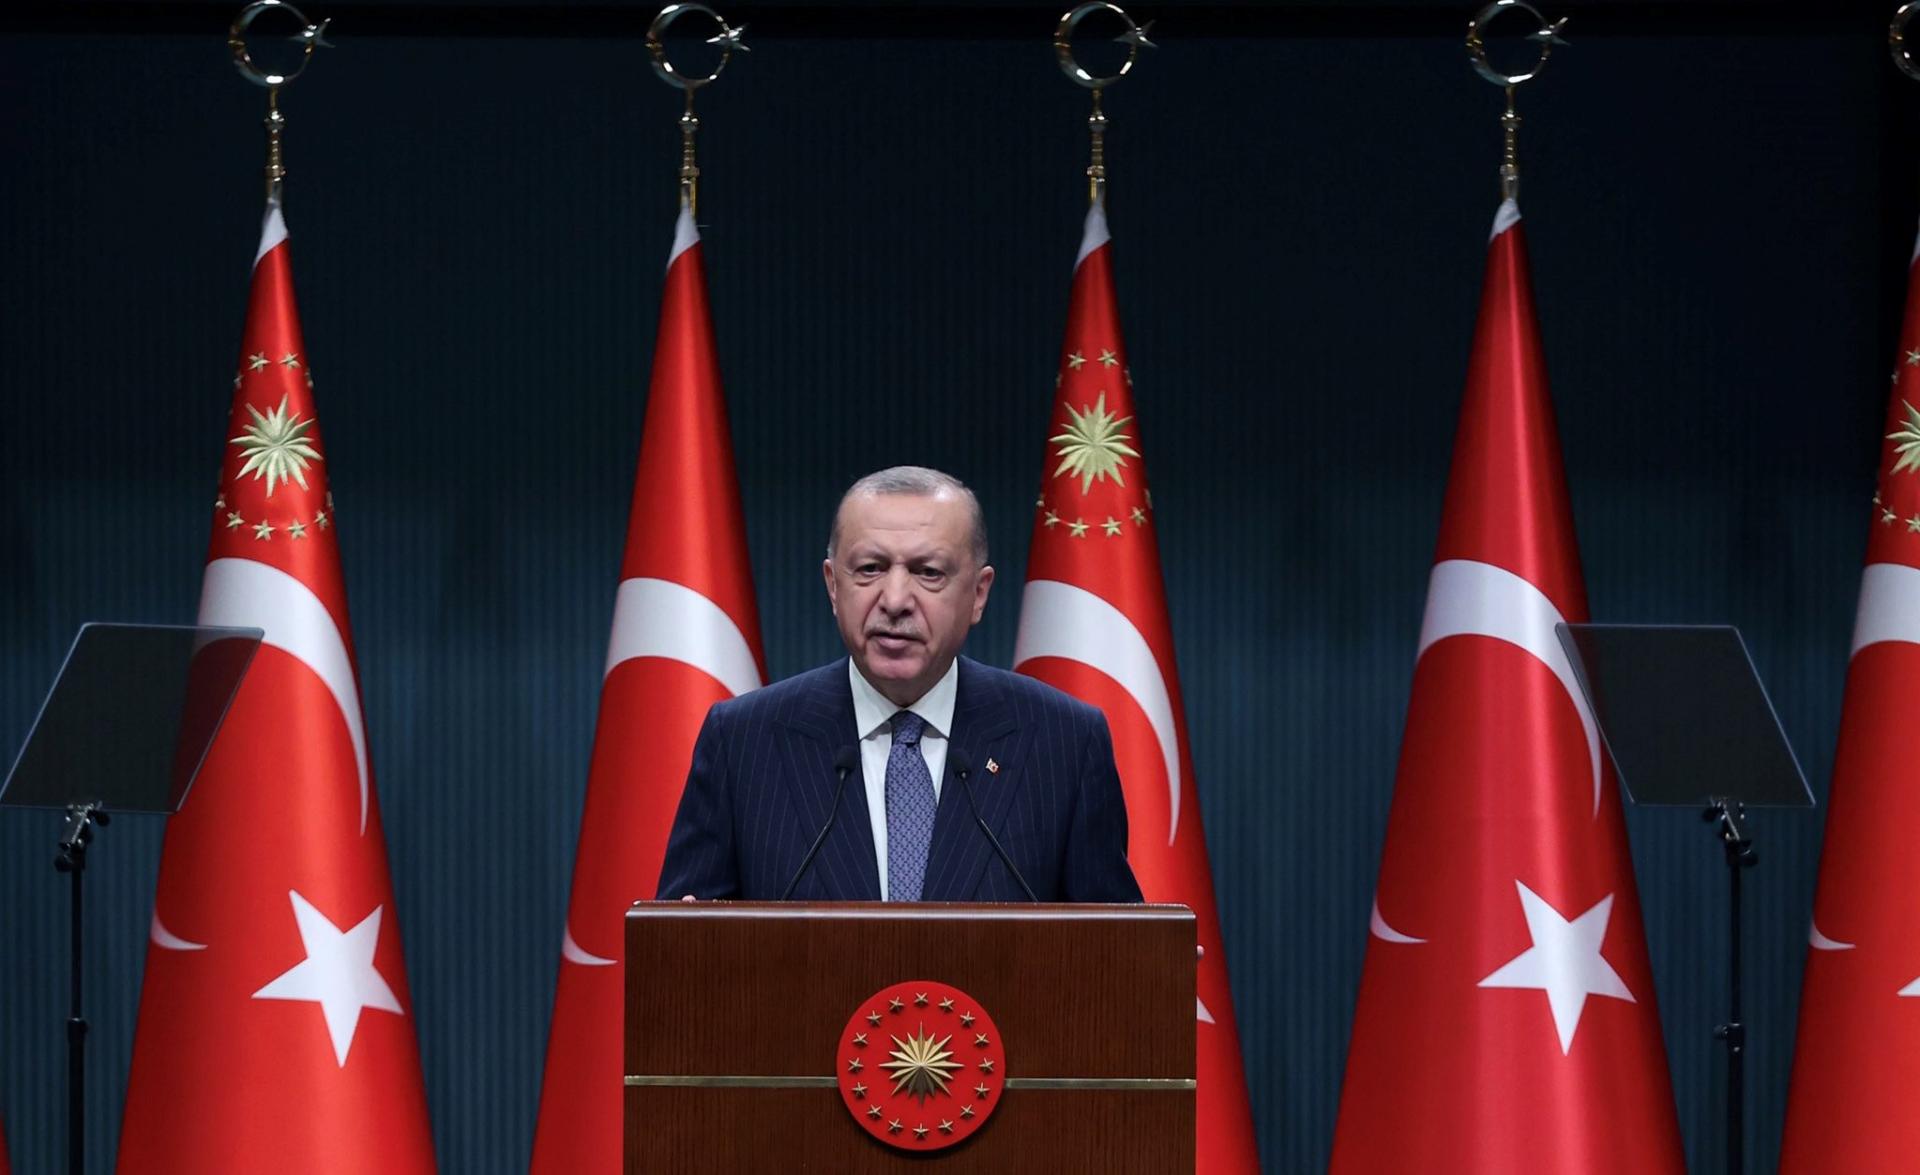 埃尔多安总统国情咨文演讲强调无人能阻挡土耳其的强大